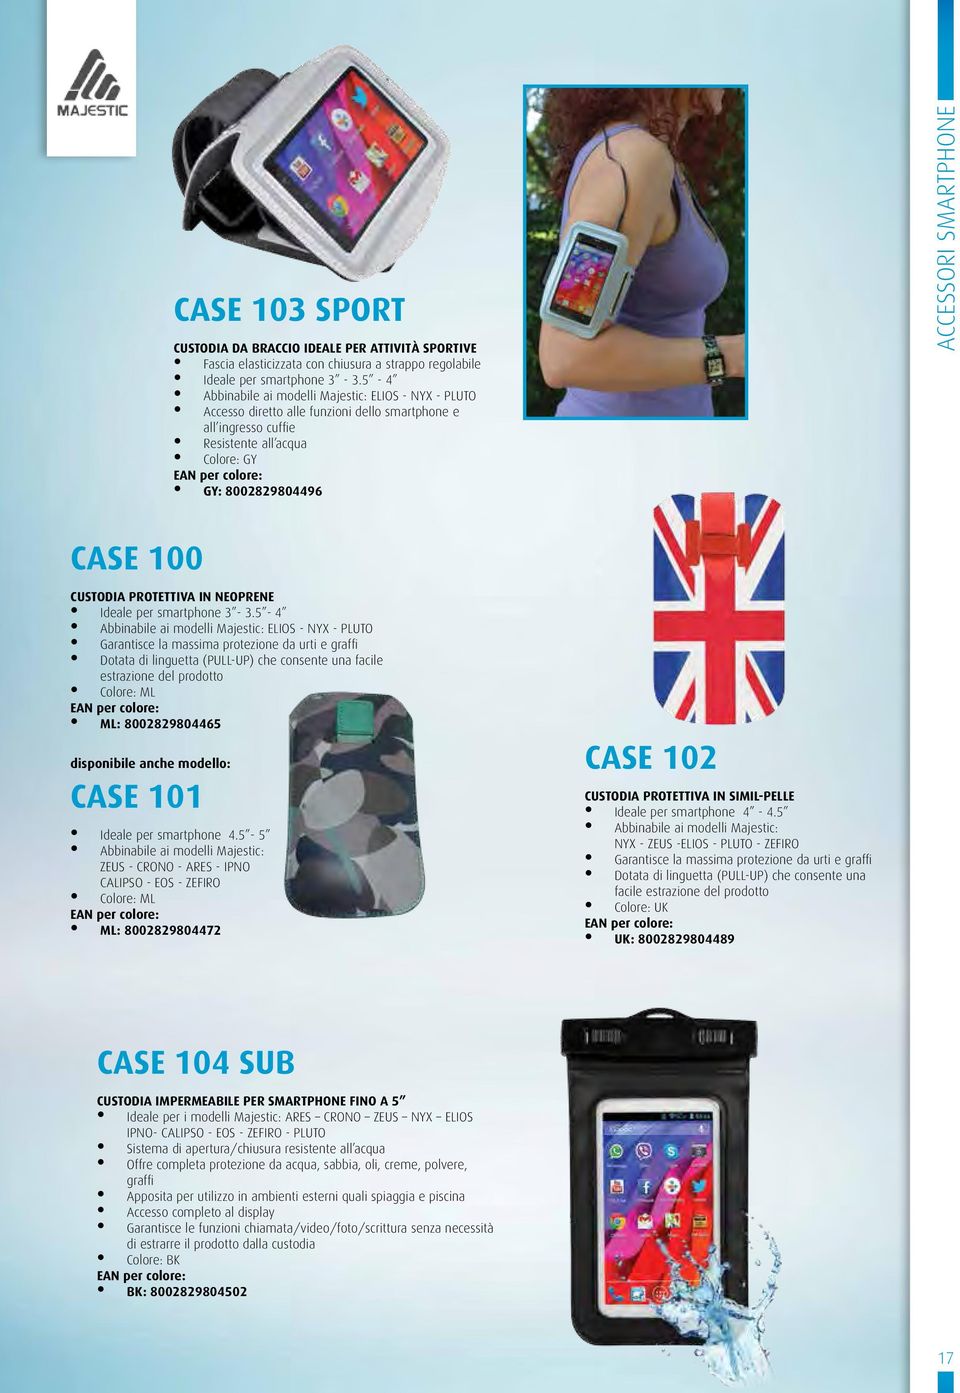 CASE 100 Custodia protettiva IN NEOPRENE Ideale per smartphone 3-3.